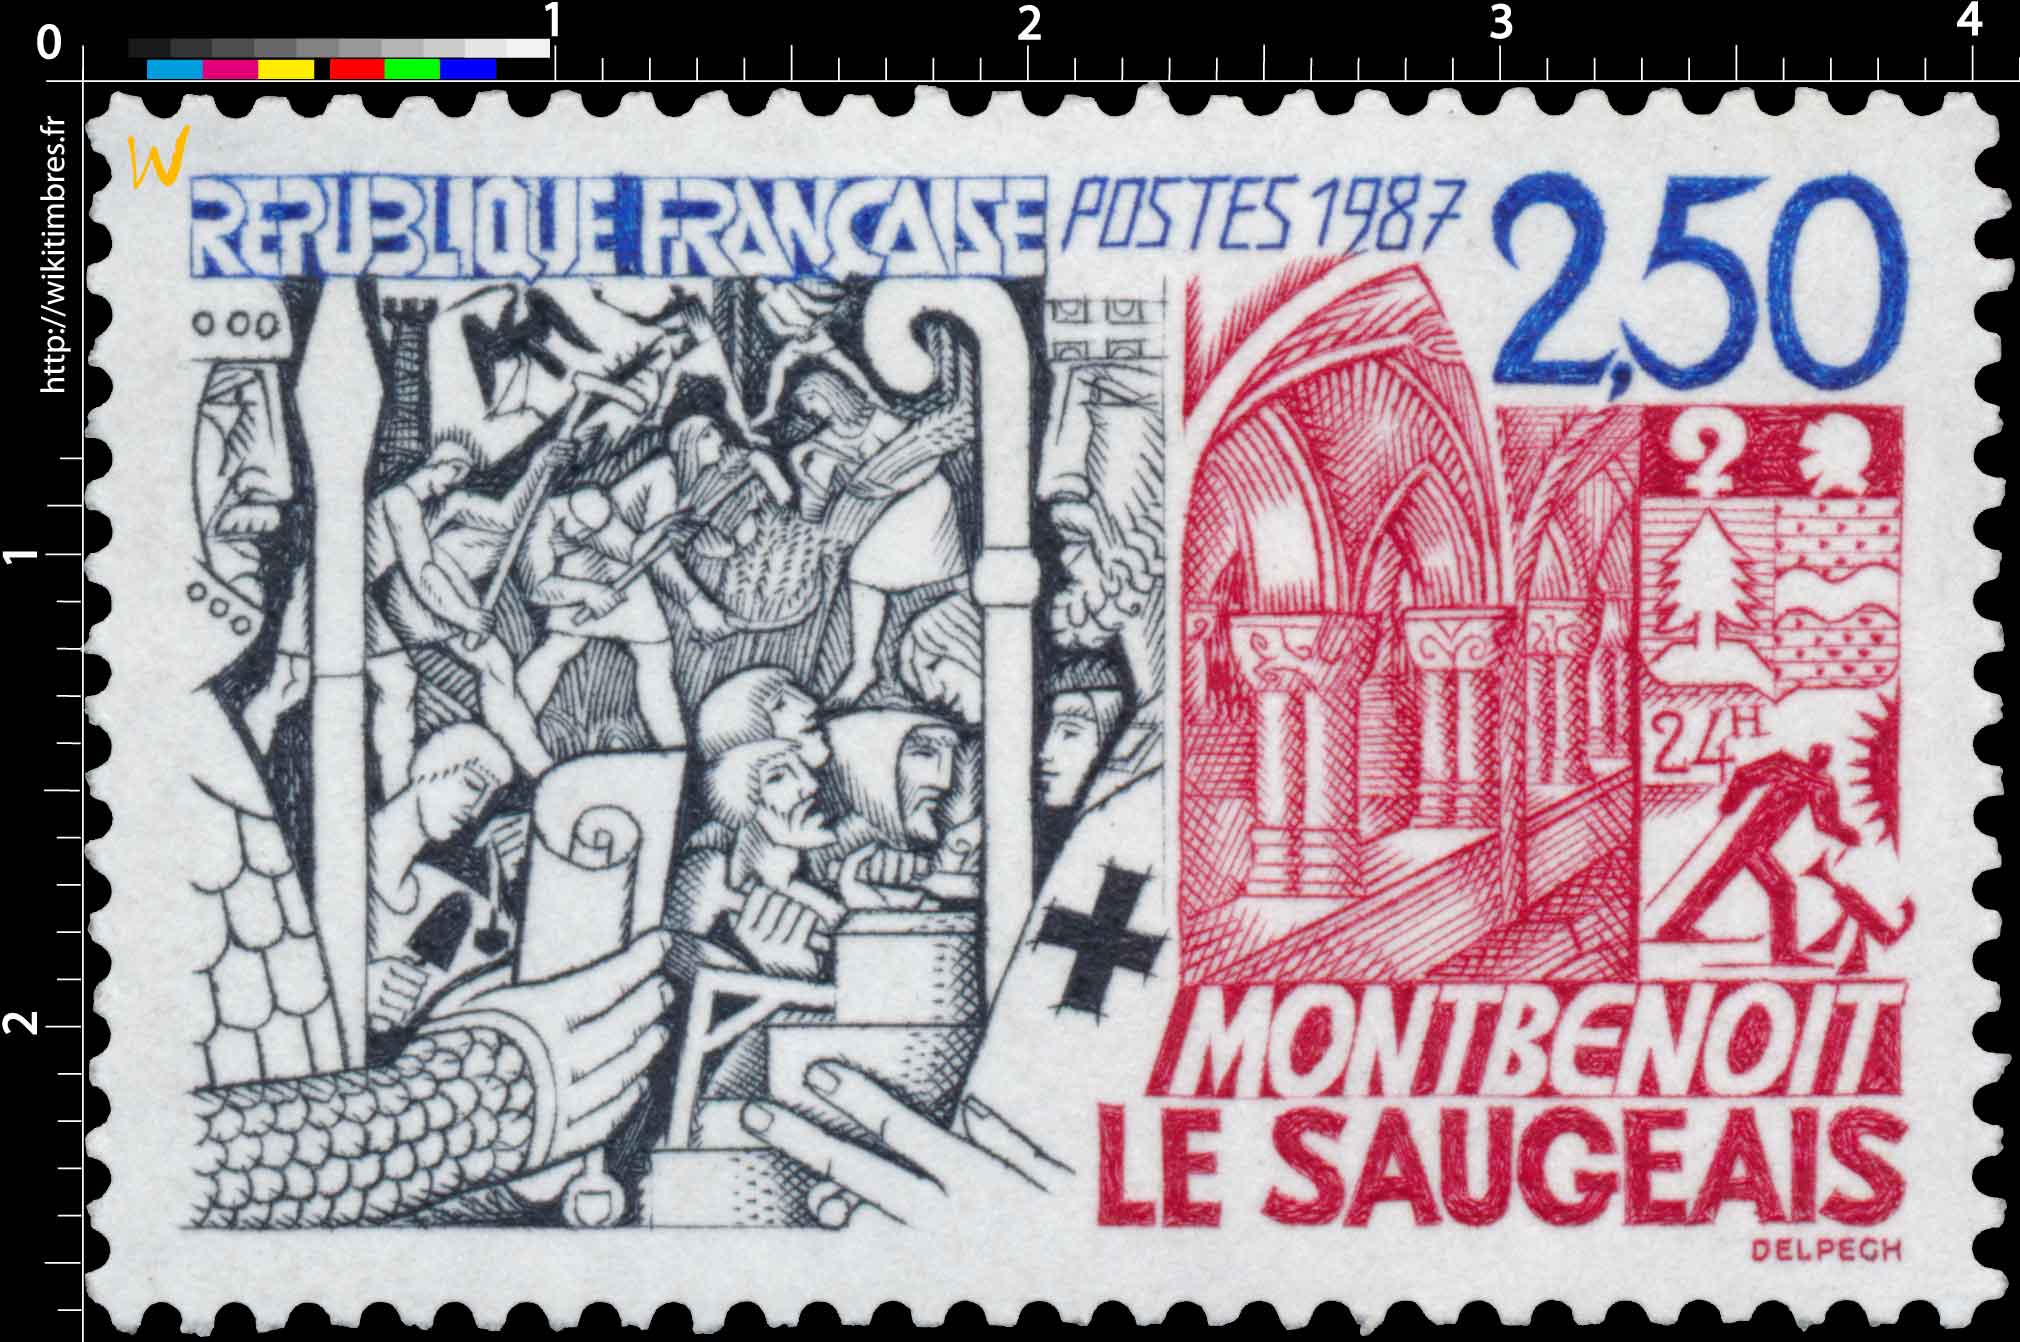 1987 MONTBENOÎT LE SAUGEAIS